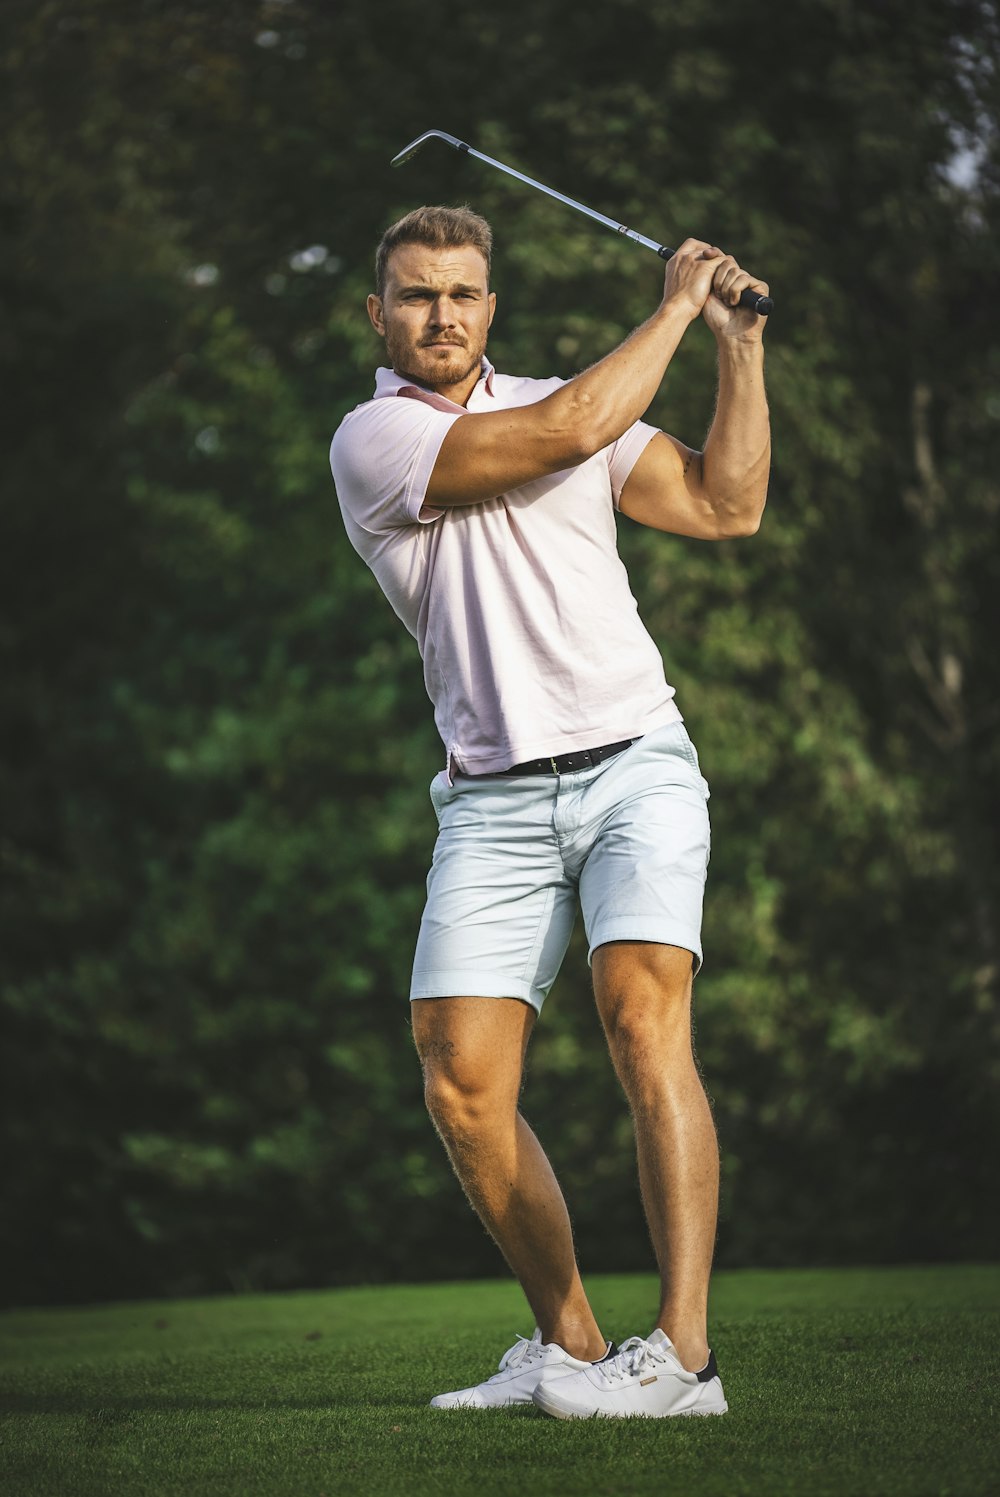 A Man Swinging A Golf Club On A Lush Green Field Photo Free